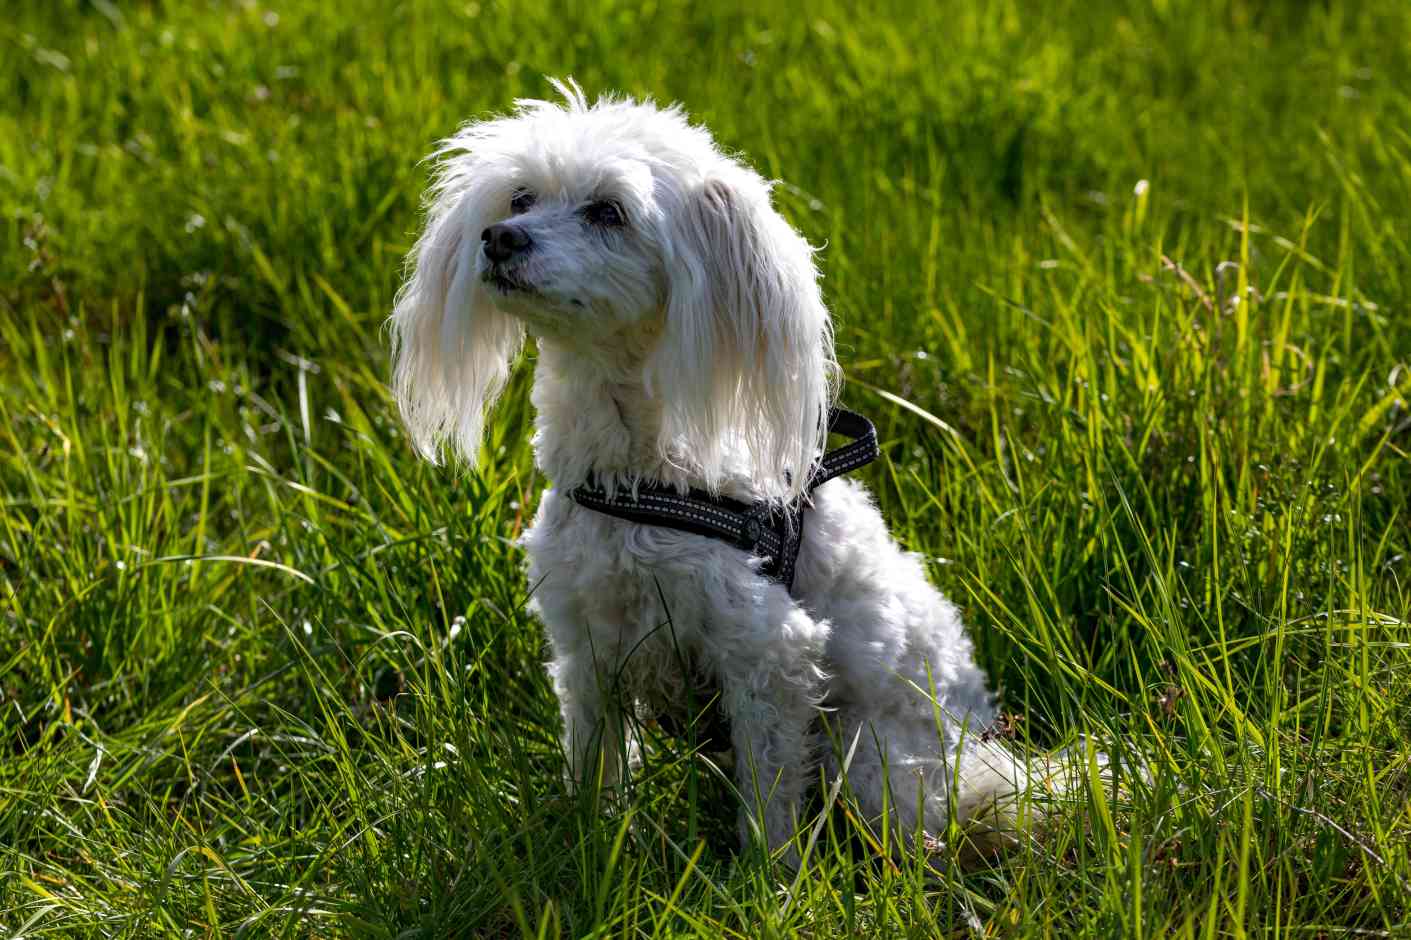 White Chinese crested powderpuff dog